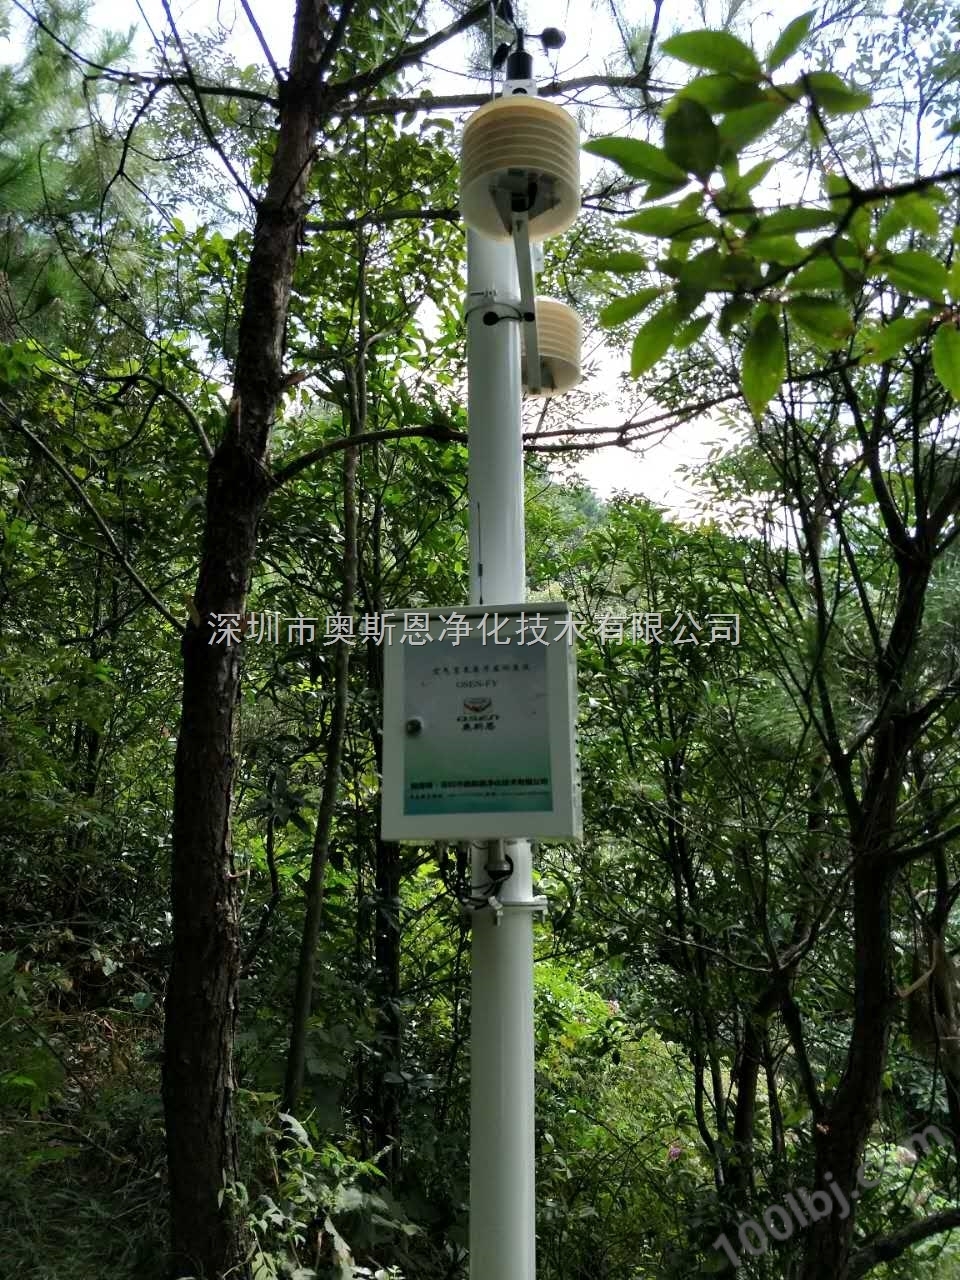 森林公园环境负氧离子智能监测设备